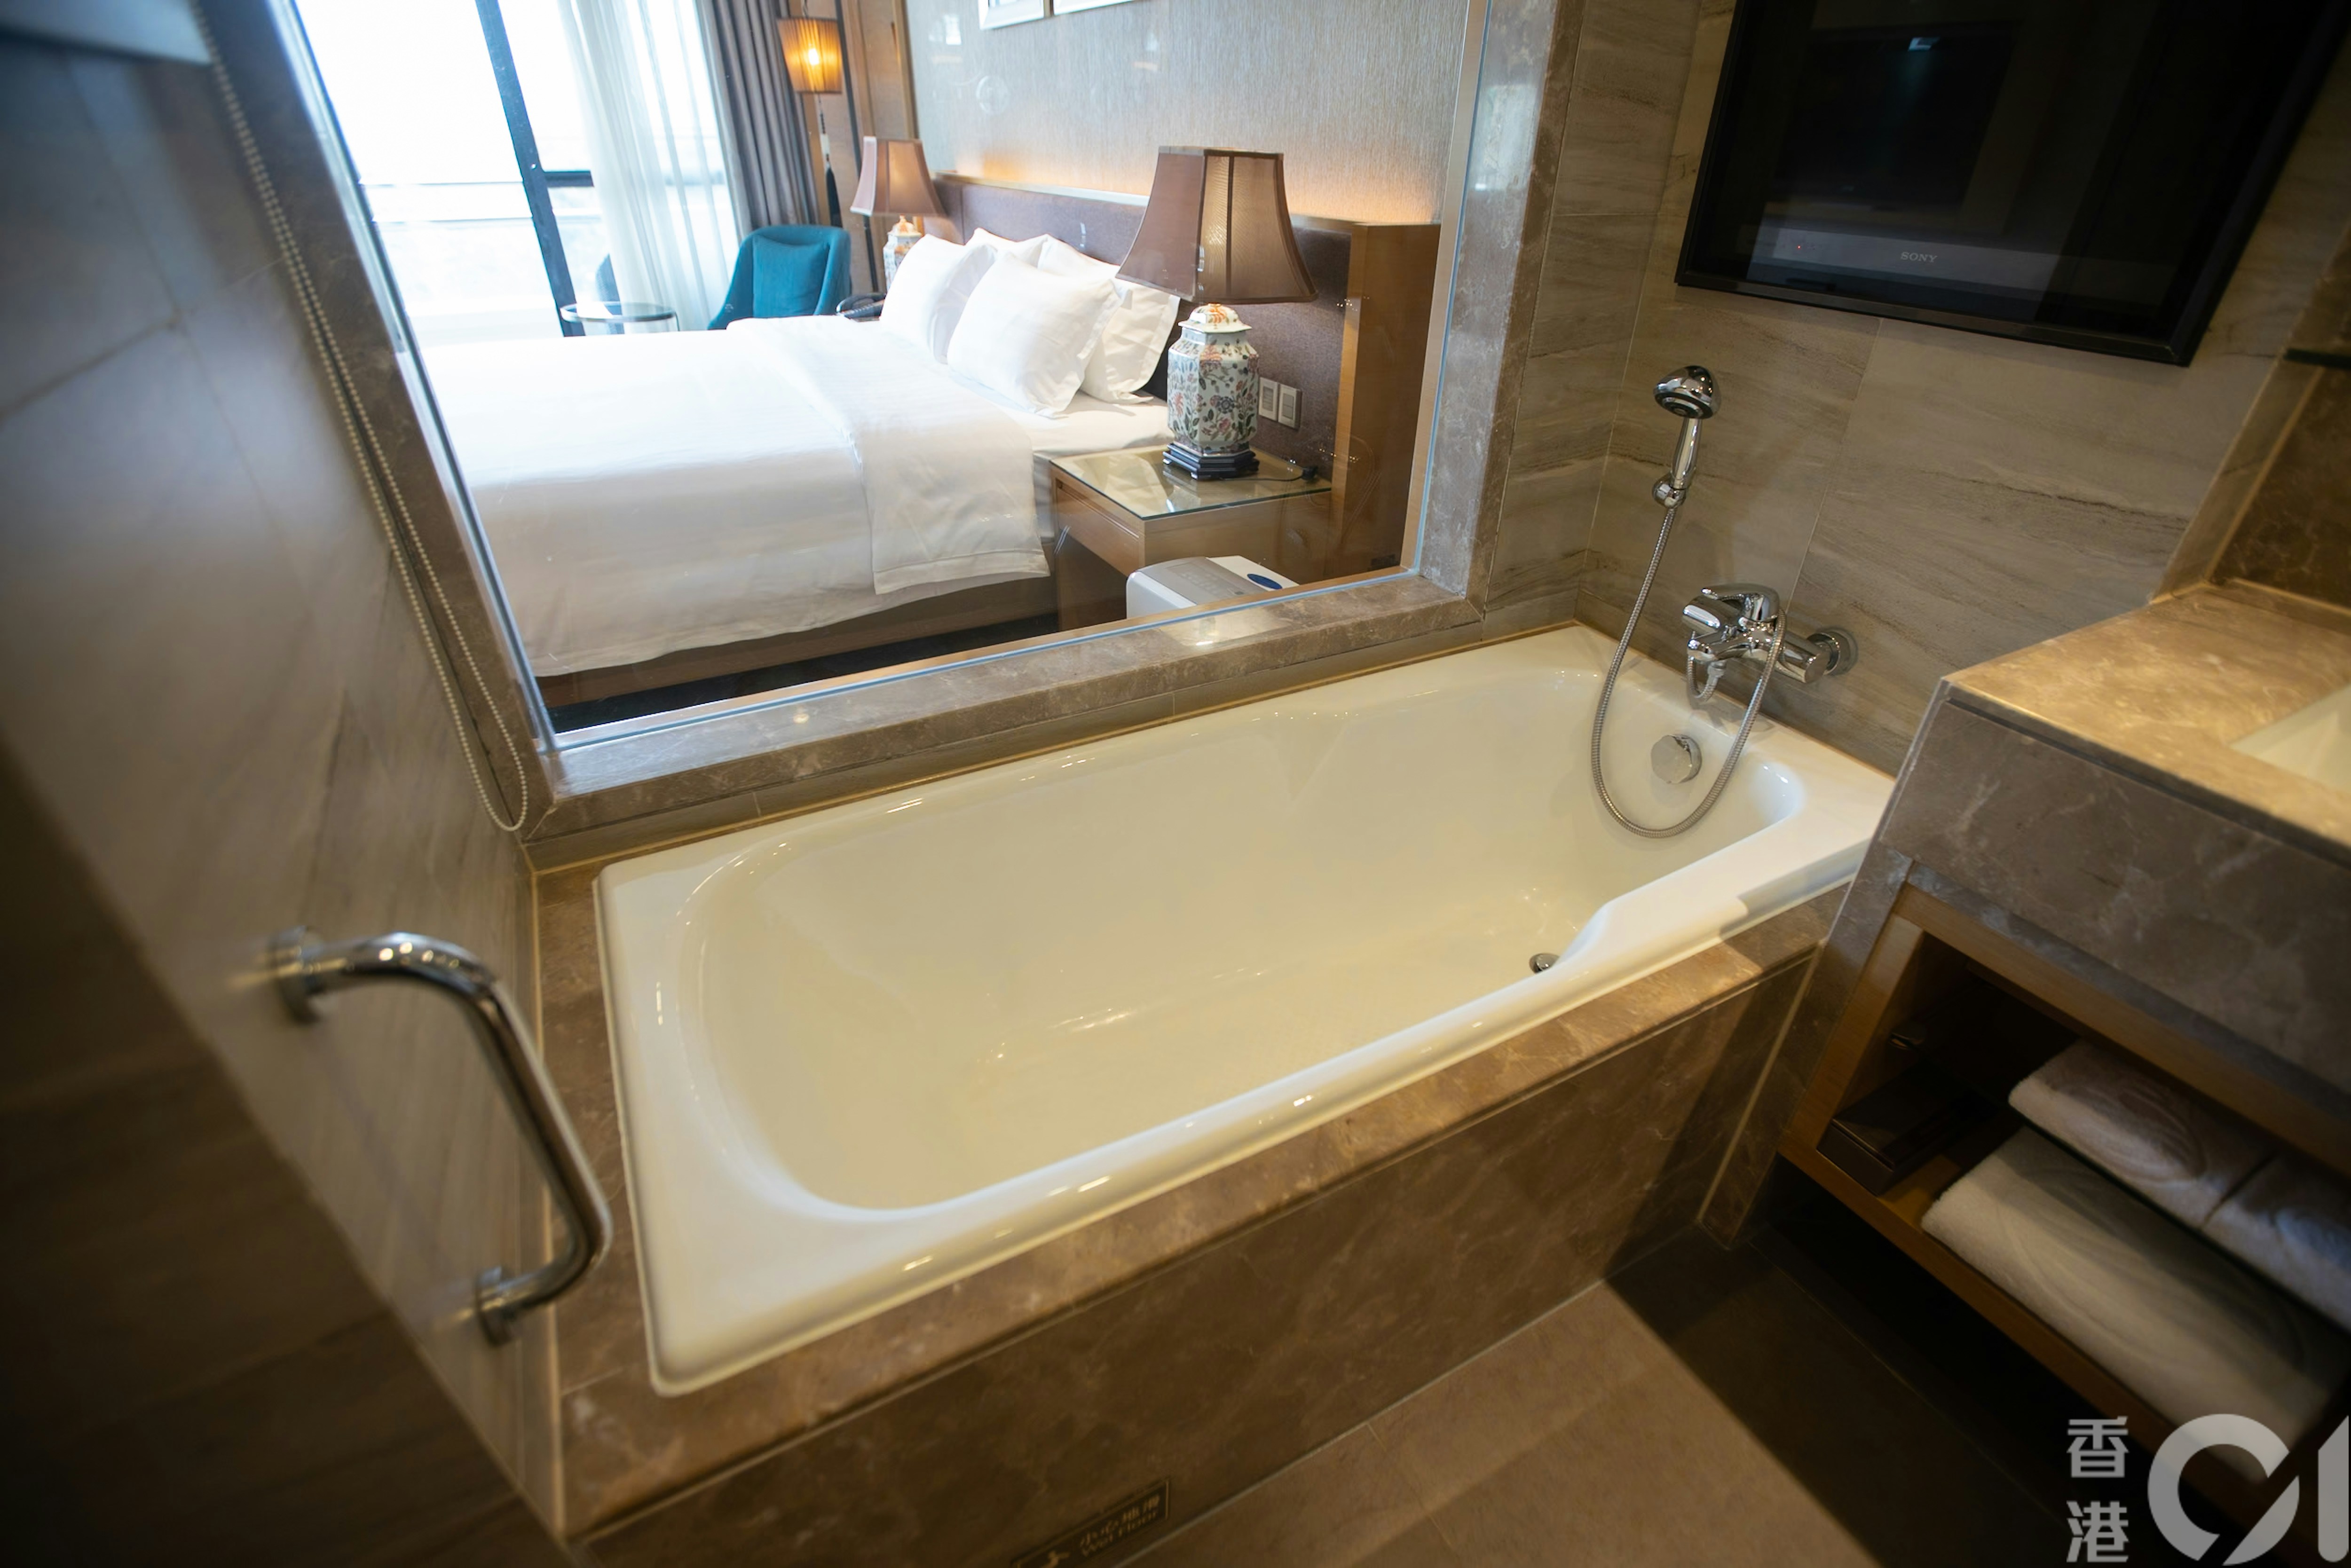 深圳观澜湖度假酒店的房间提供浴缸。（黄浩谦摄）